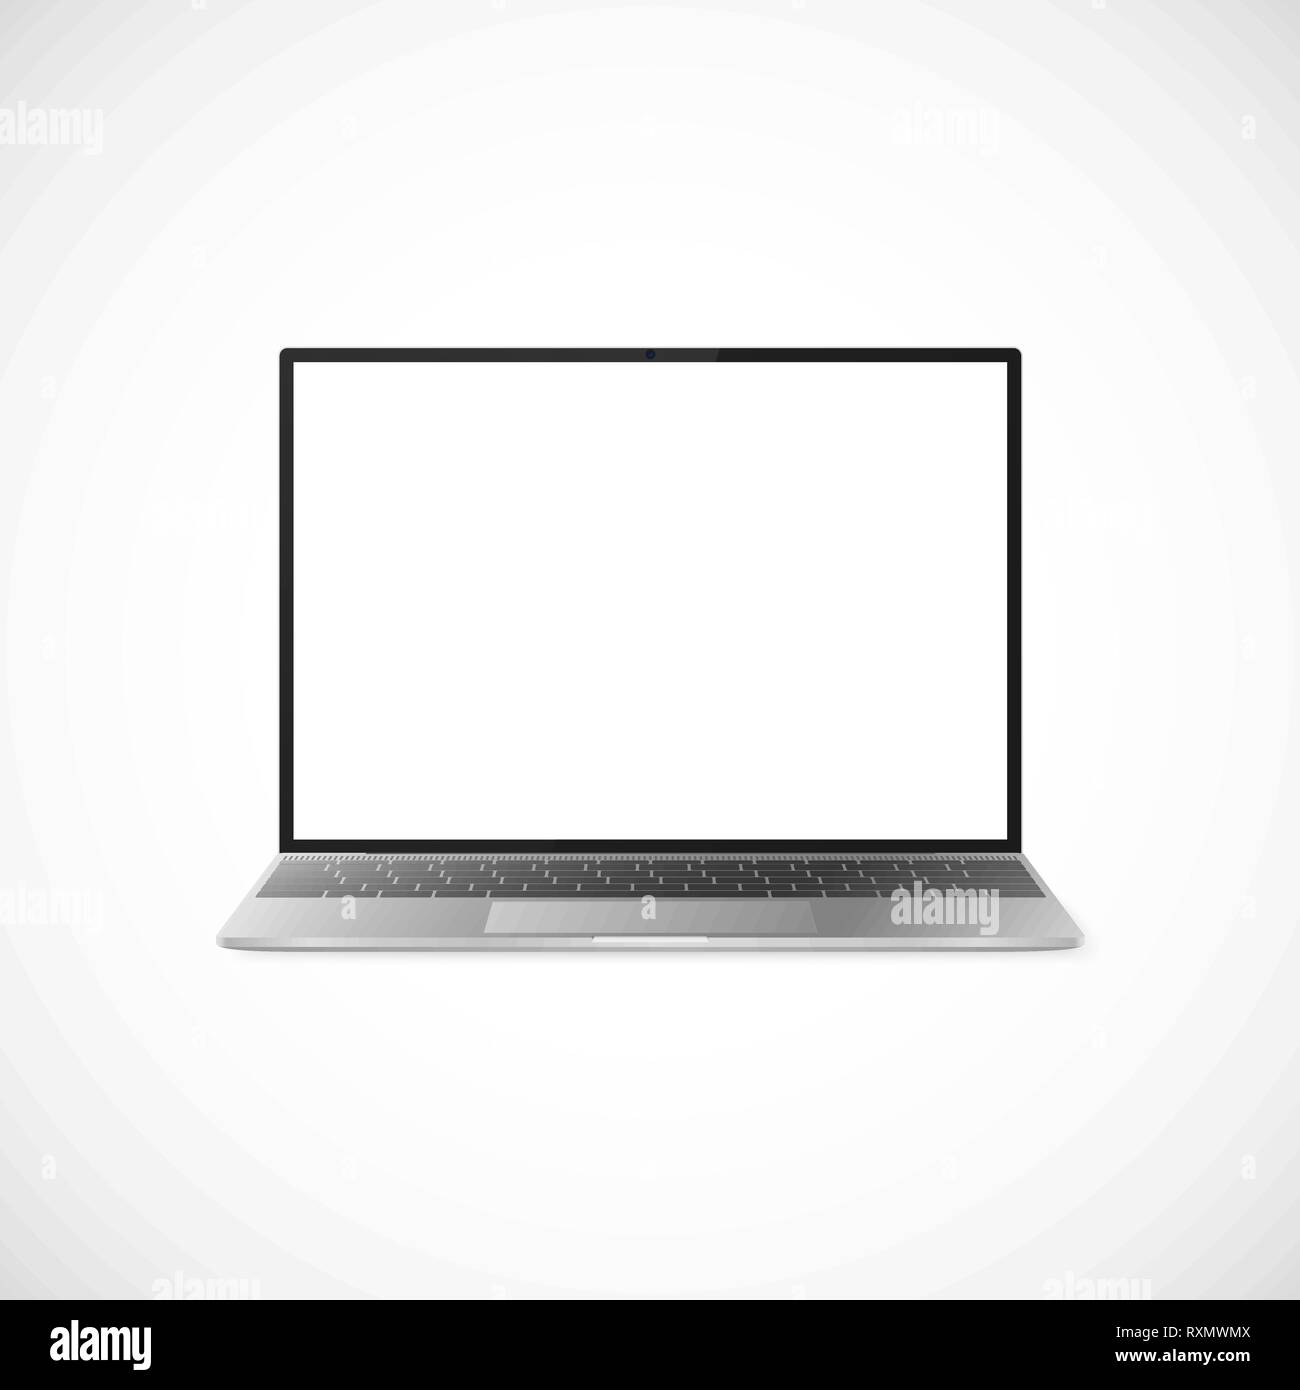 Laptop mit Schatten auf weißem Hintergrund. Laptop Design mit schwarzen und grauen Tastatur. Laptop Vorderansicht. Vector Illustration Stock Vektor